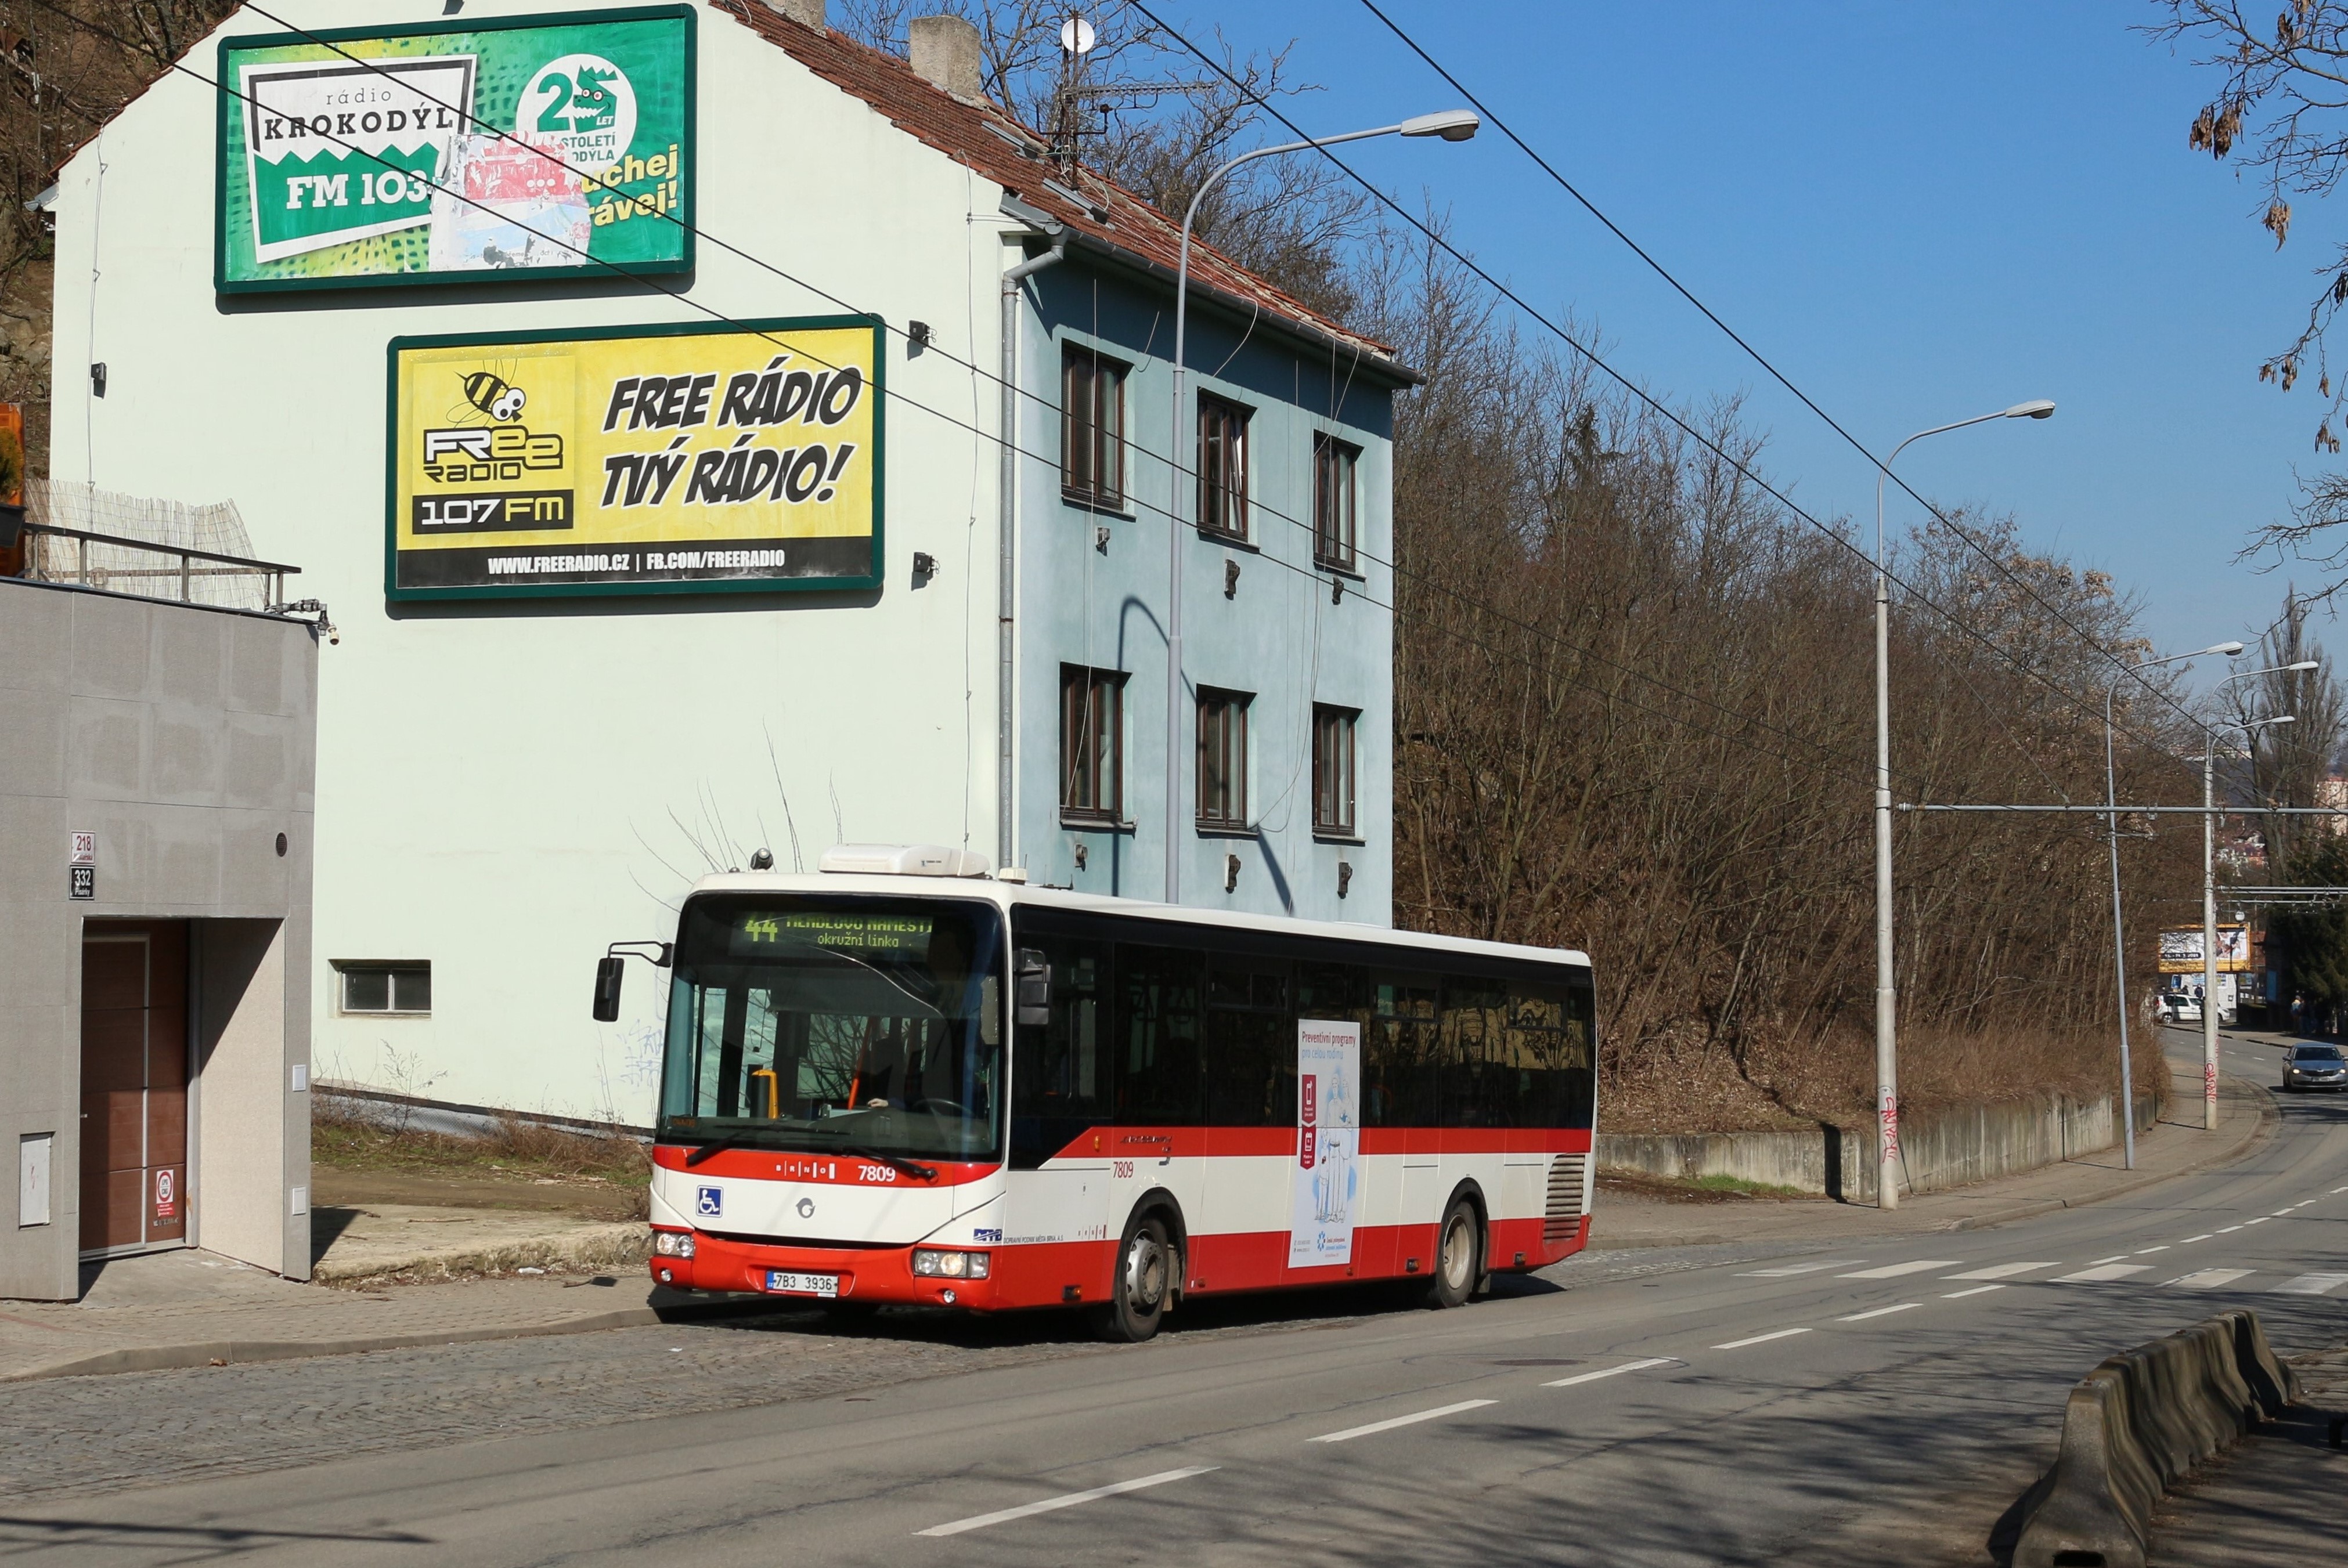 Brno, Irisbus Crossway LE 12M № 7809